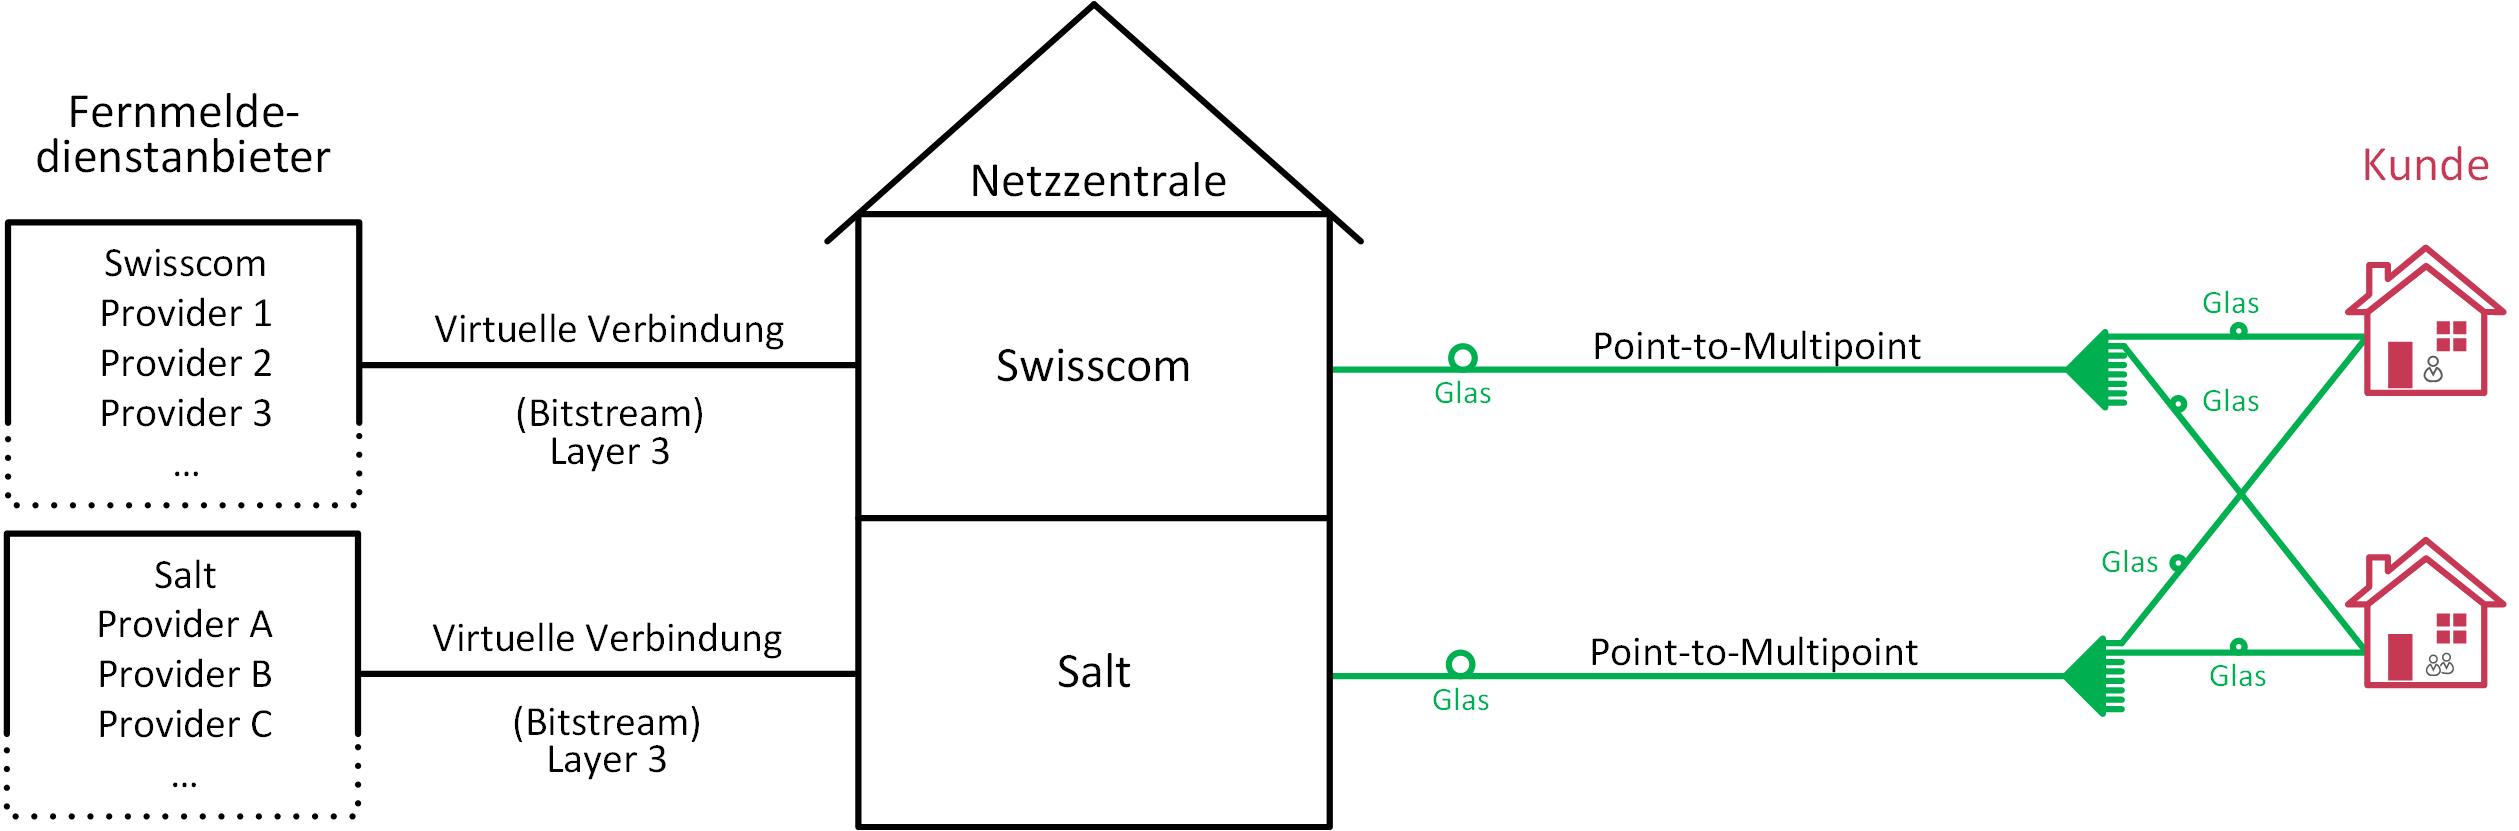 Layer-3-Zugang über Point-to-Multipoint-FTTH-Netze von Swisscom oder Salt (Glasfaser-Partnerschaft)